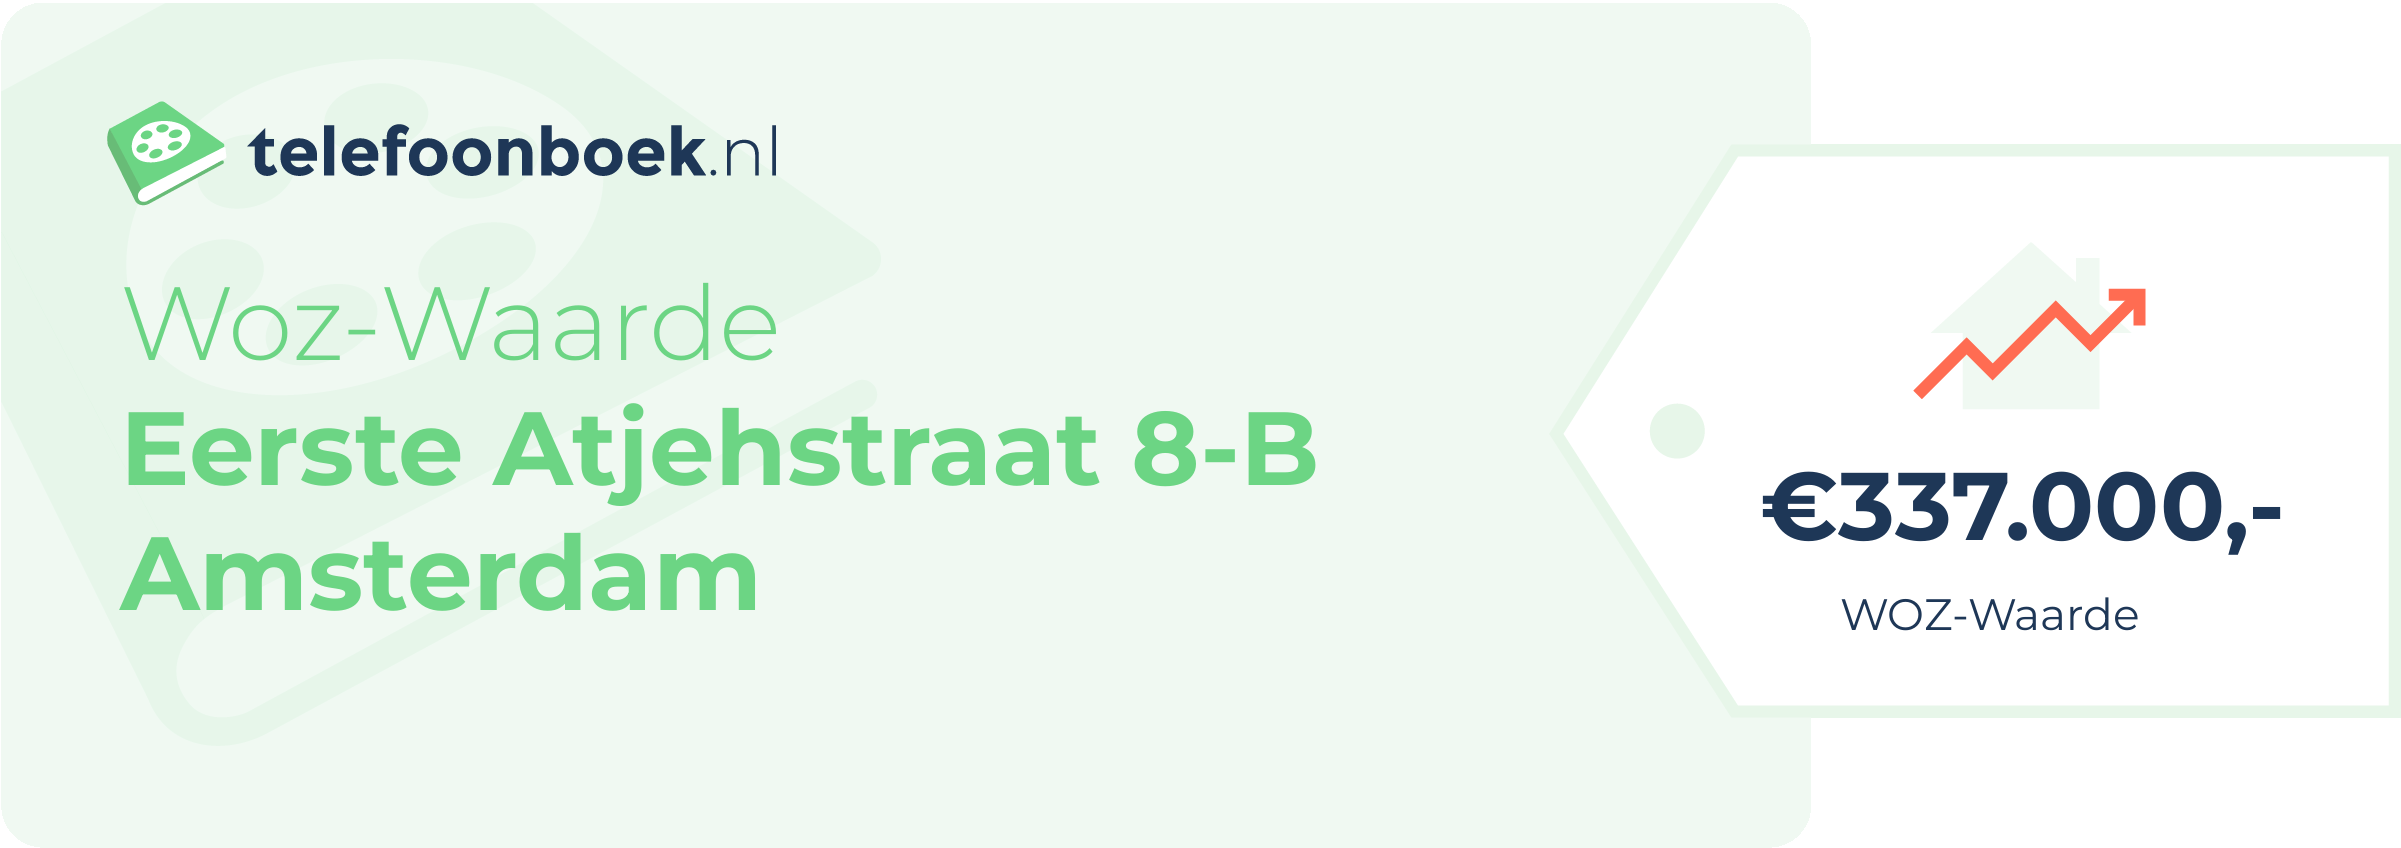 WOZ-waarde Eerste Atjehstraat 8-B Amsterdam